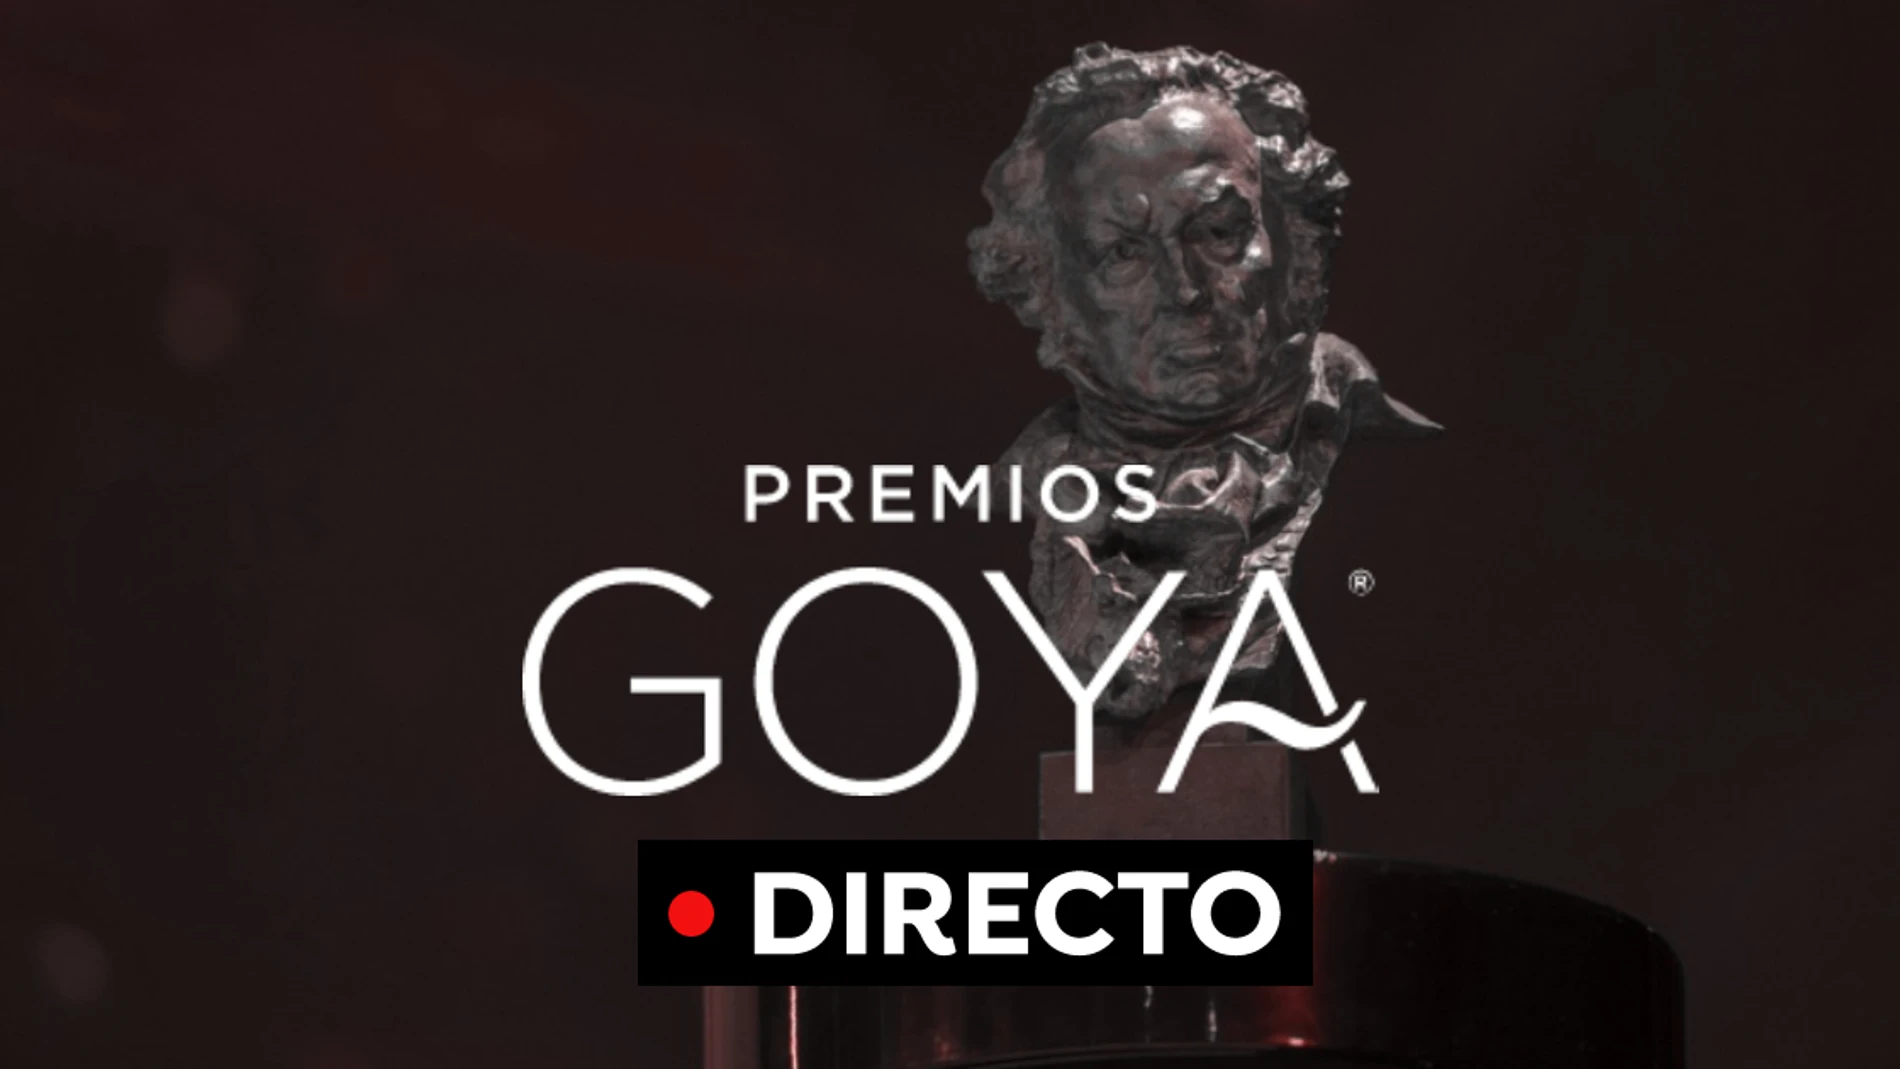 Premios Goya 2022 EN DIRECTO: La gala, premios y todos los ganadores hoy